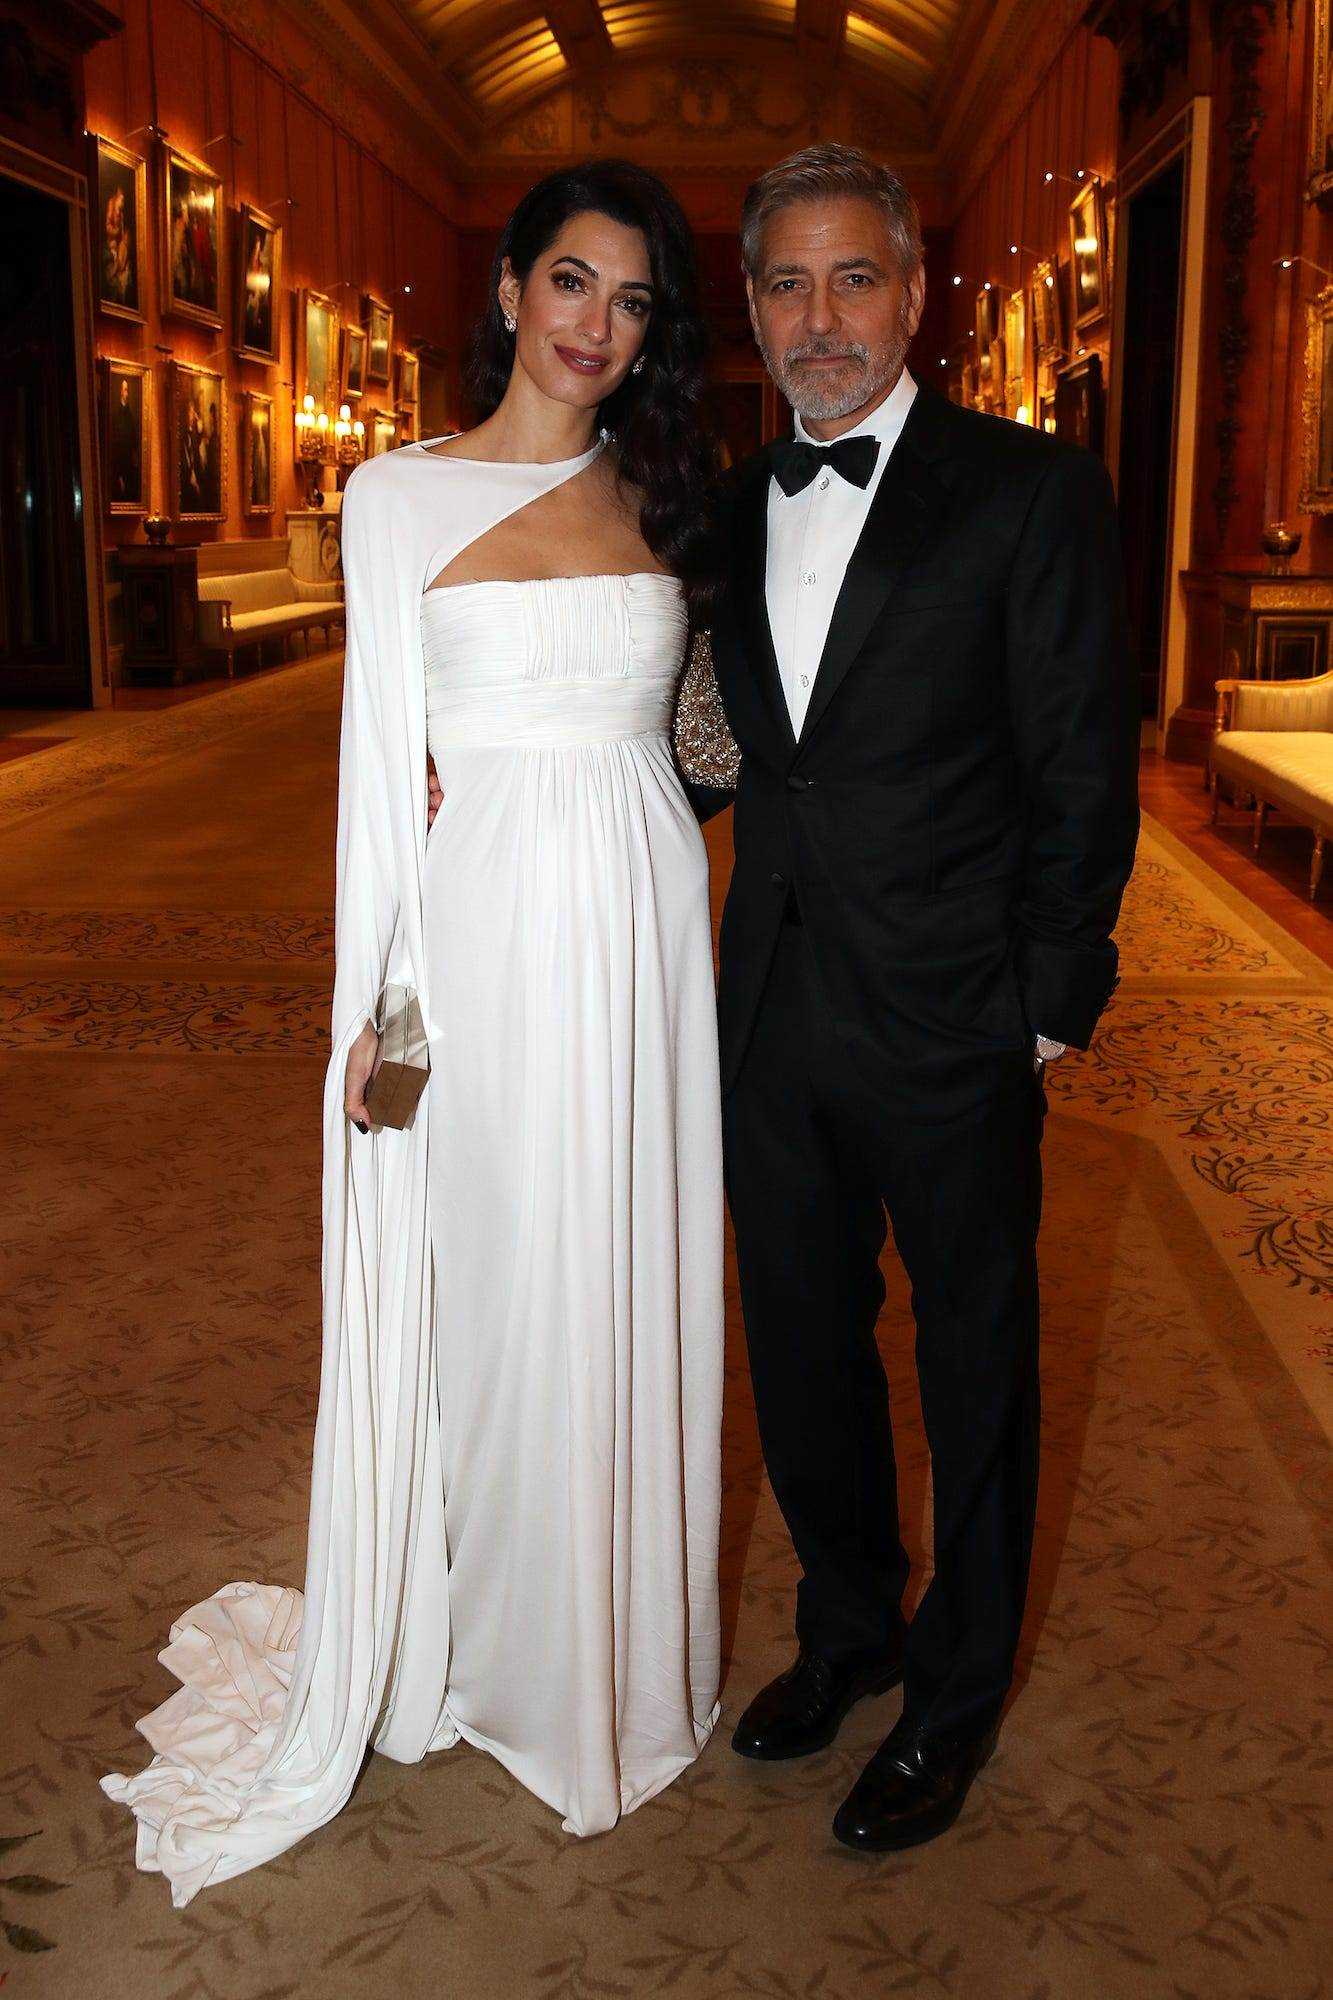 The Clooney's bei einem Abendessen von Prinz Charles in London, England, am 12. März 2019.